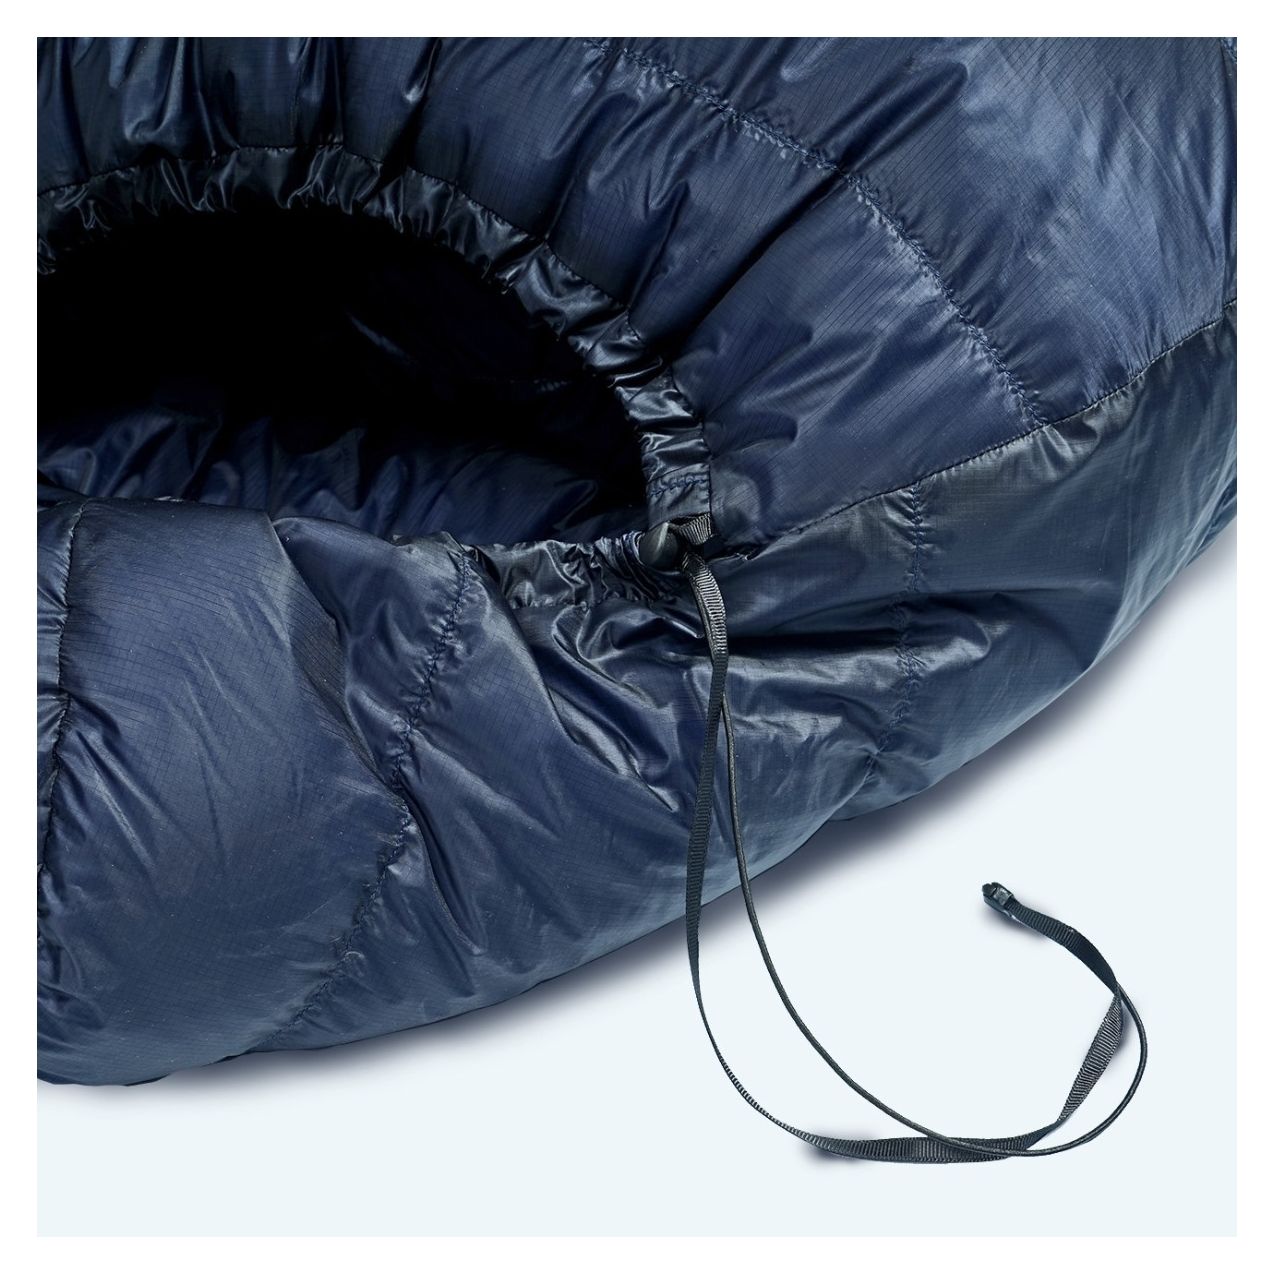 X-Lite 300 down sleeping bag Cumulus® outdoor